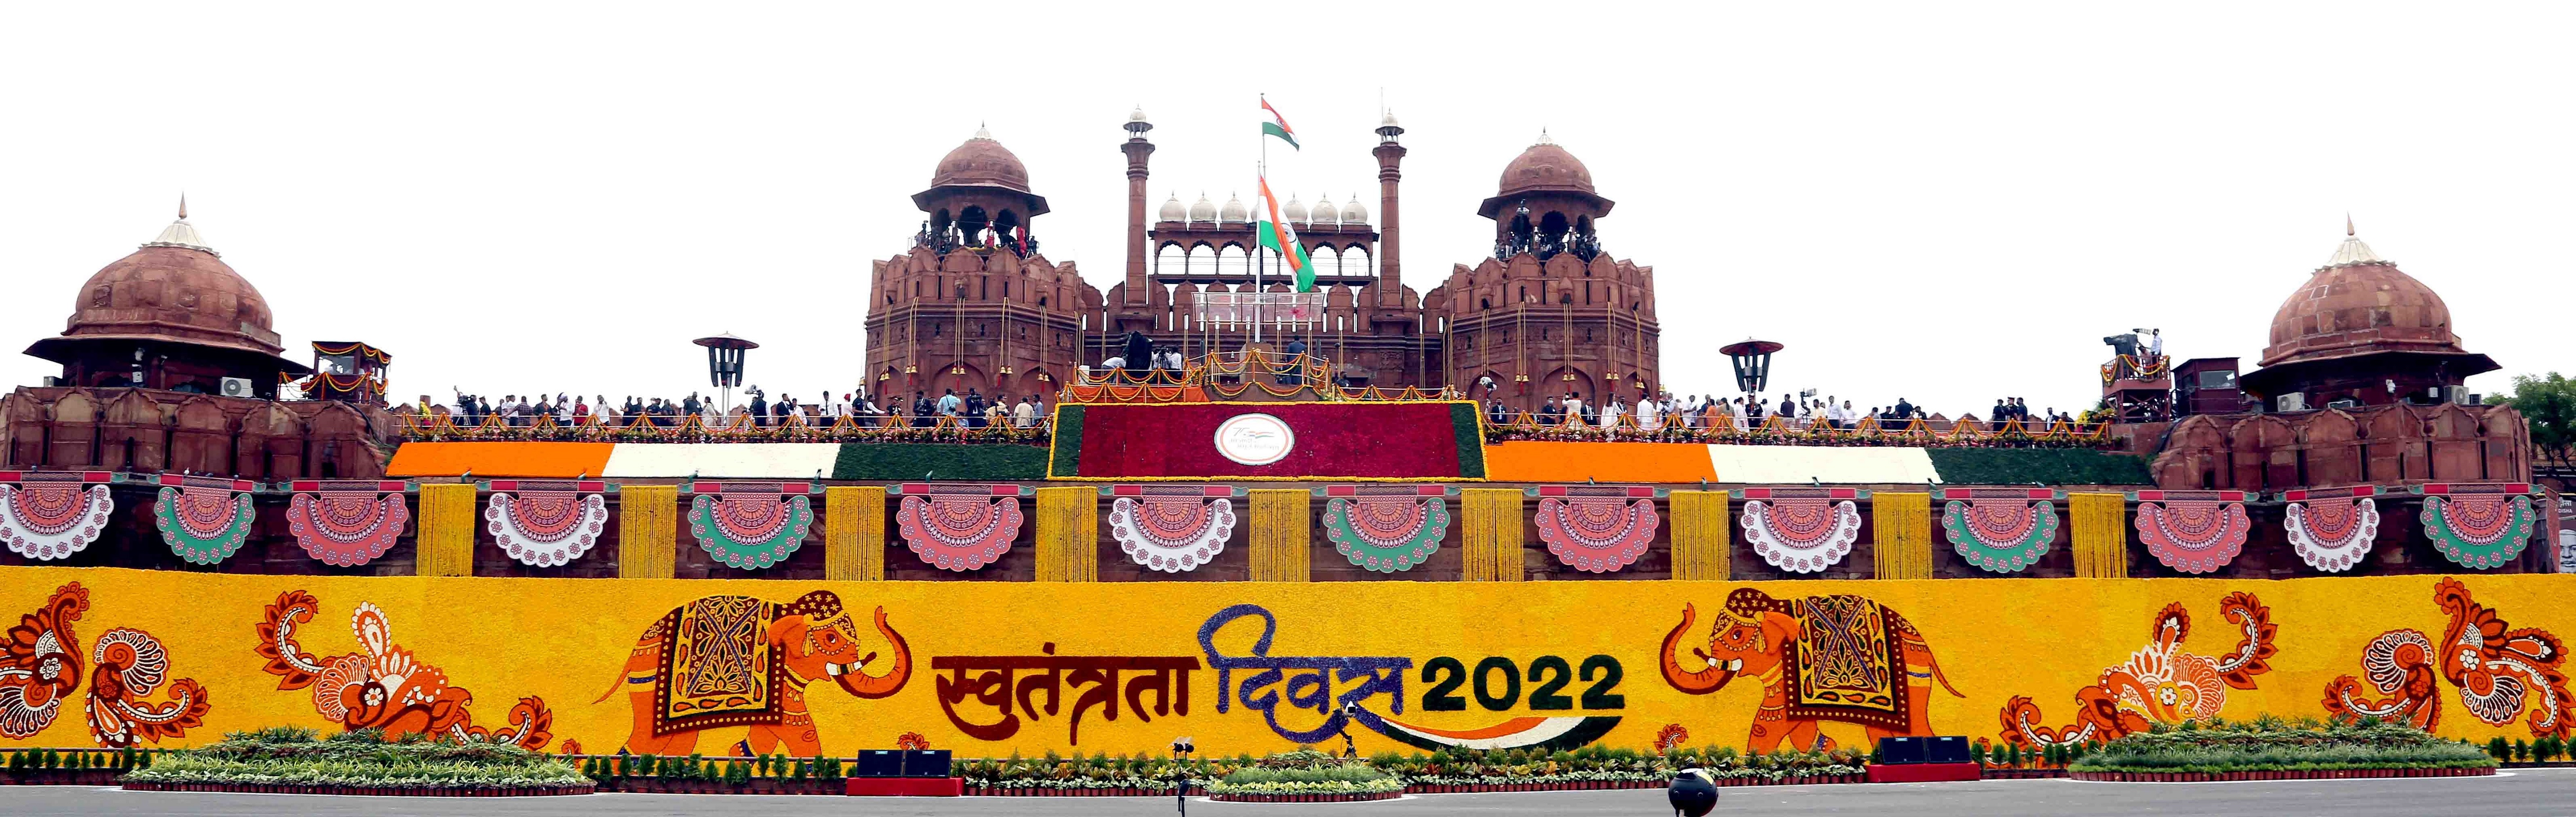 15 अगस्त, 2022 को दिल्ली के लाल किले में स्वतंत्रता दिवस समारोह।